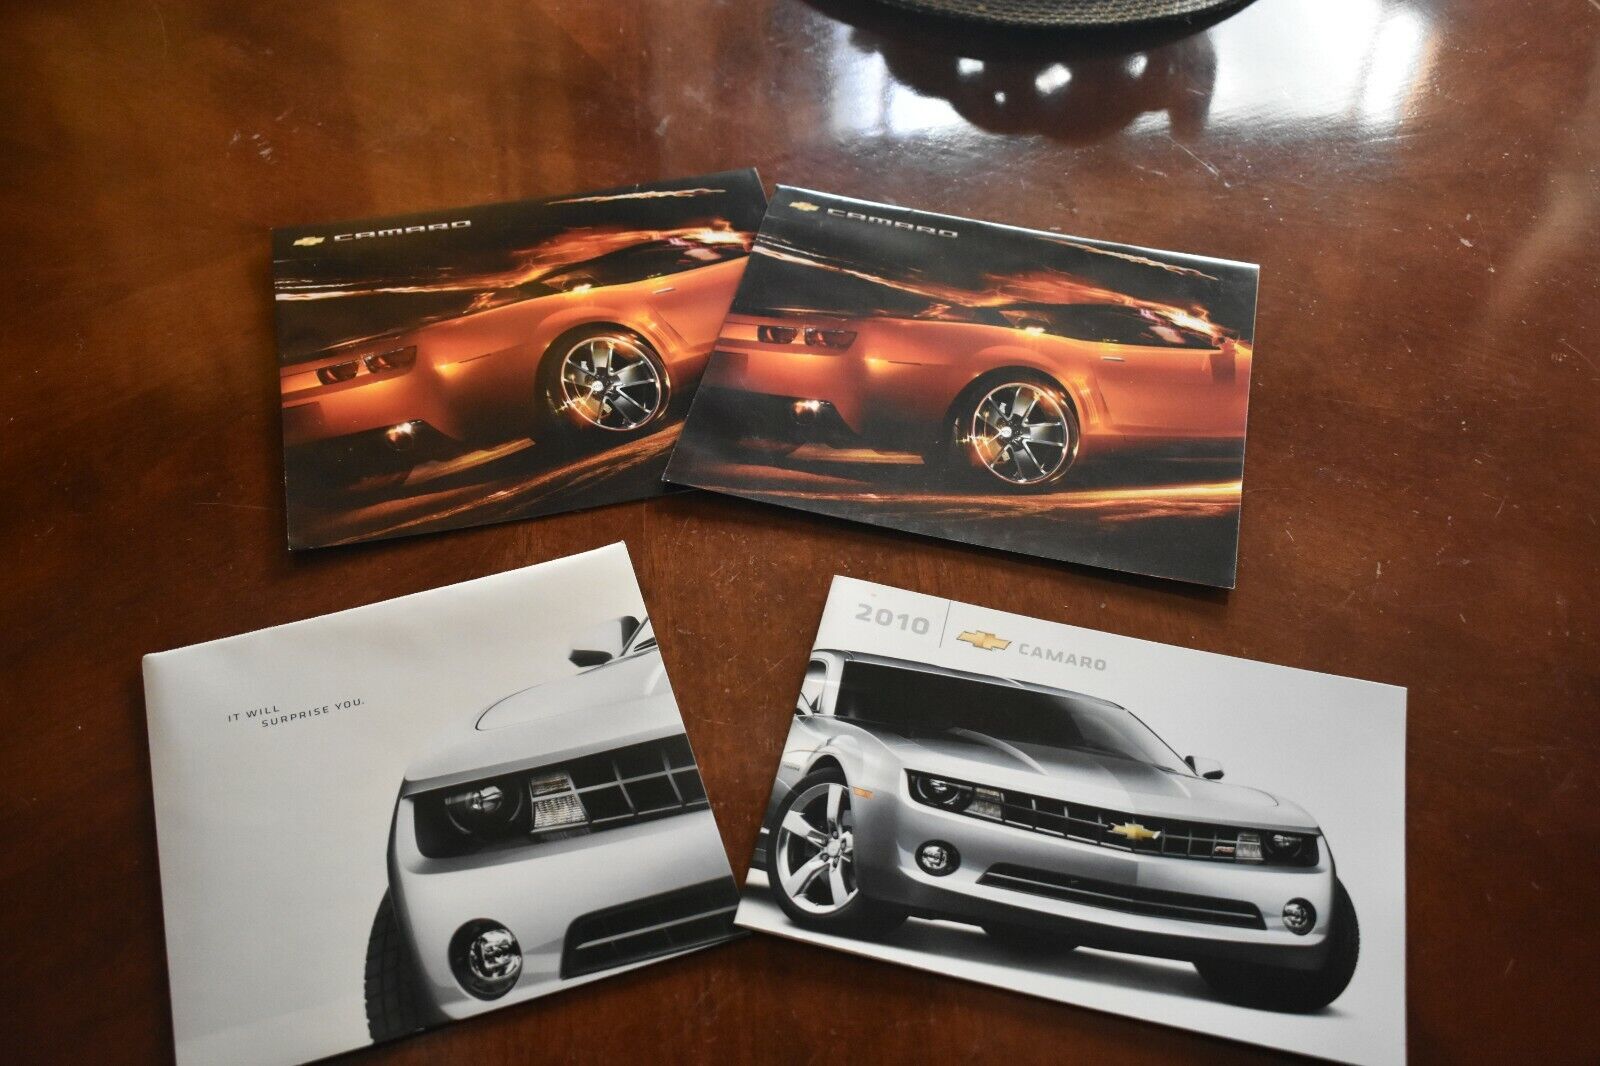 2010 Camaro Pre Production Sales brochures & Concept brochure / Poster